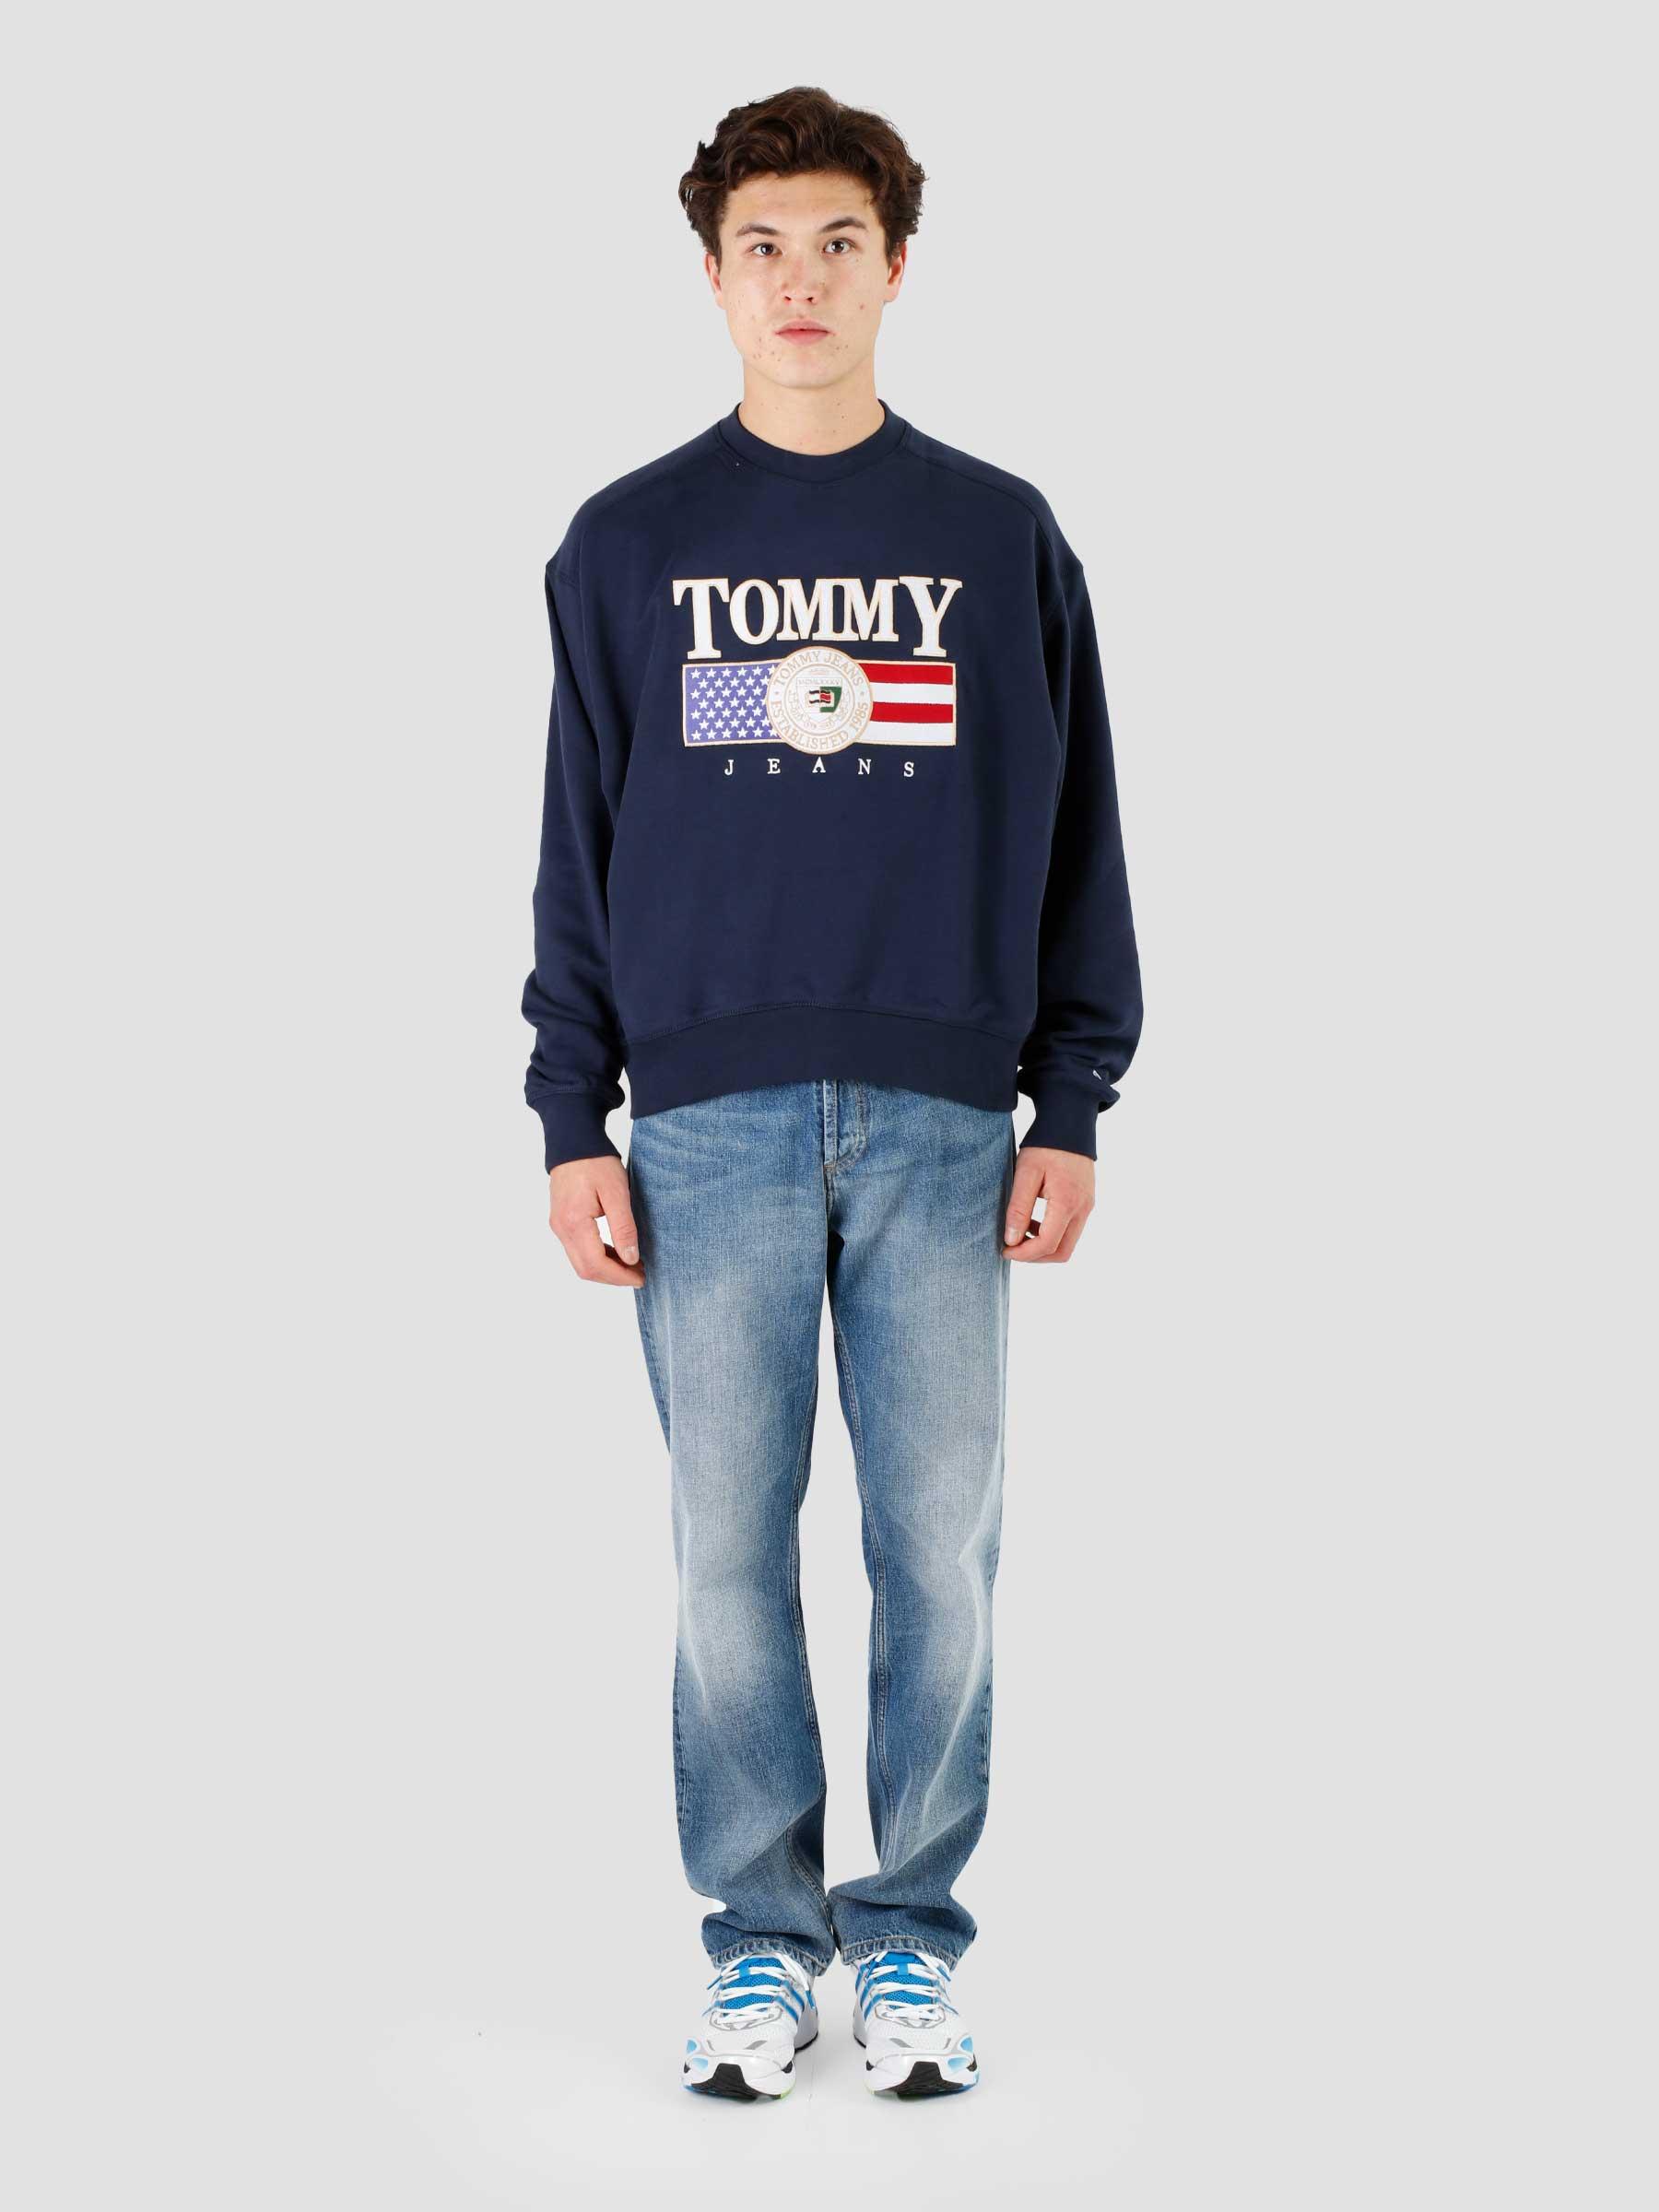 Tommy Jeans TJM Boxy TJ Luxe Crewneck Twilight Navy - Freshcotton